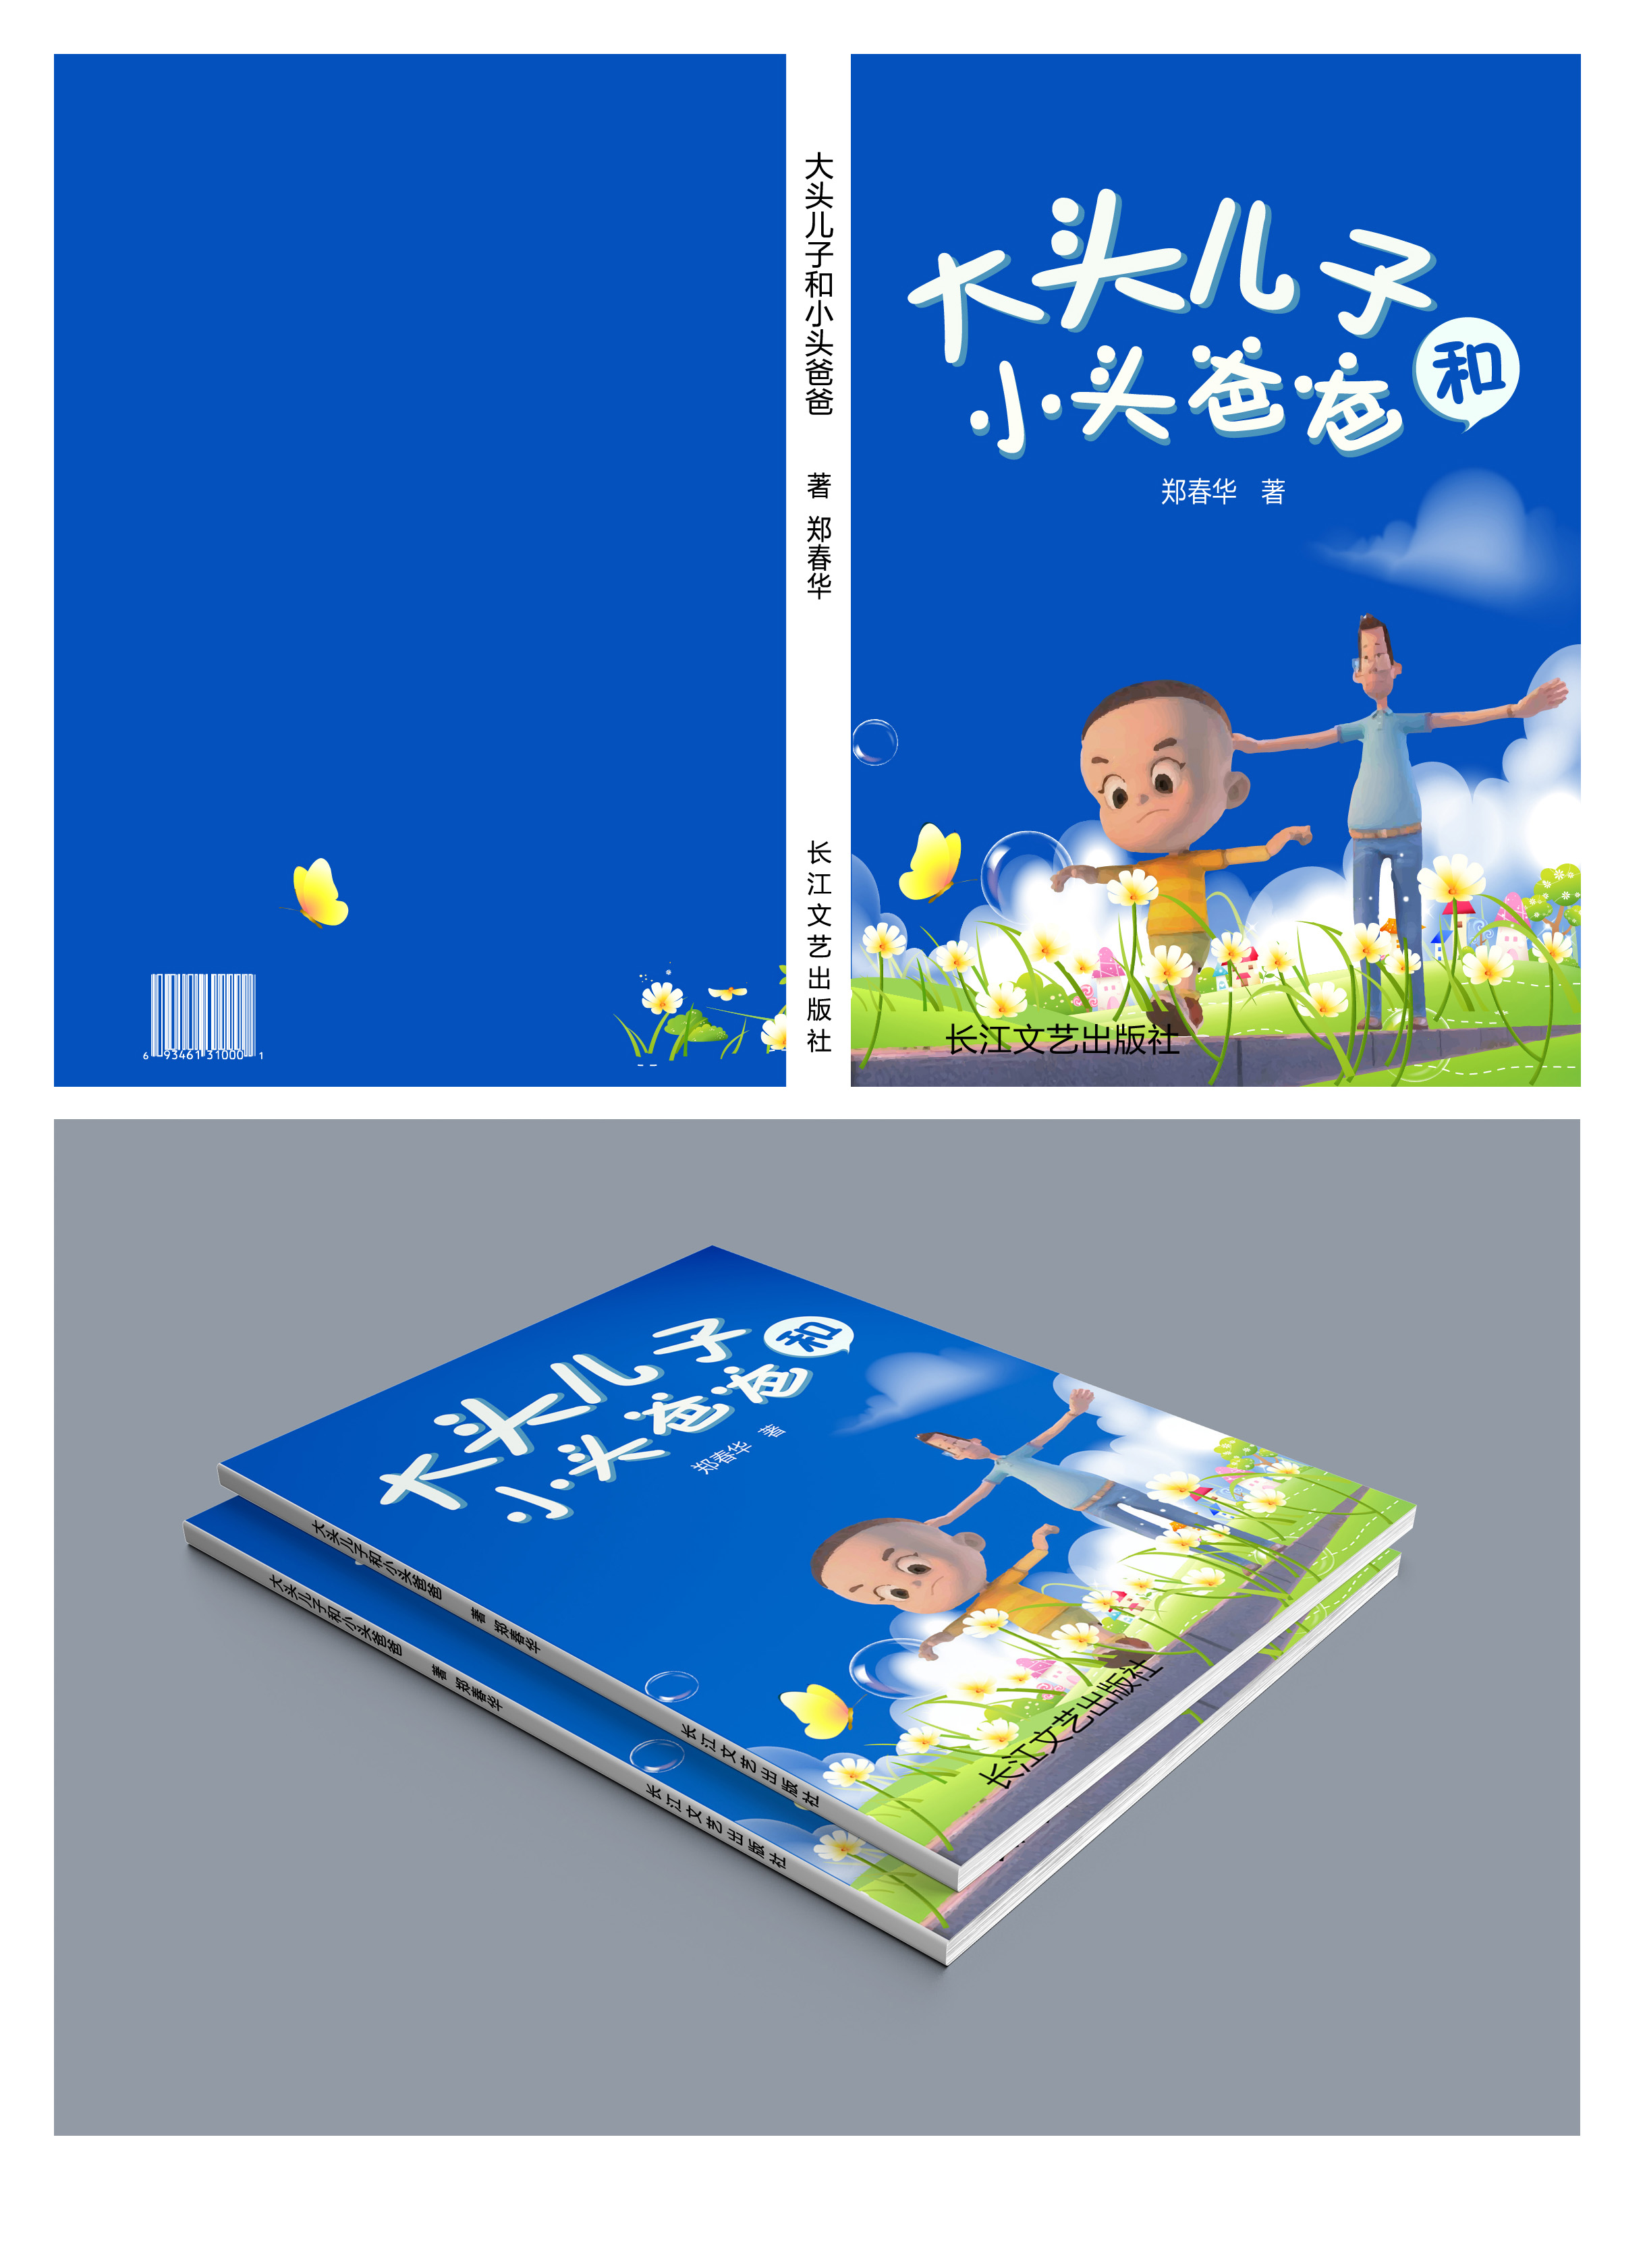 封面设计:儿童书籍《大头儿子和小头爸爸》